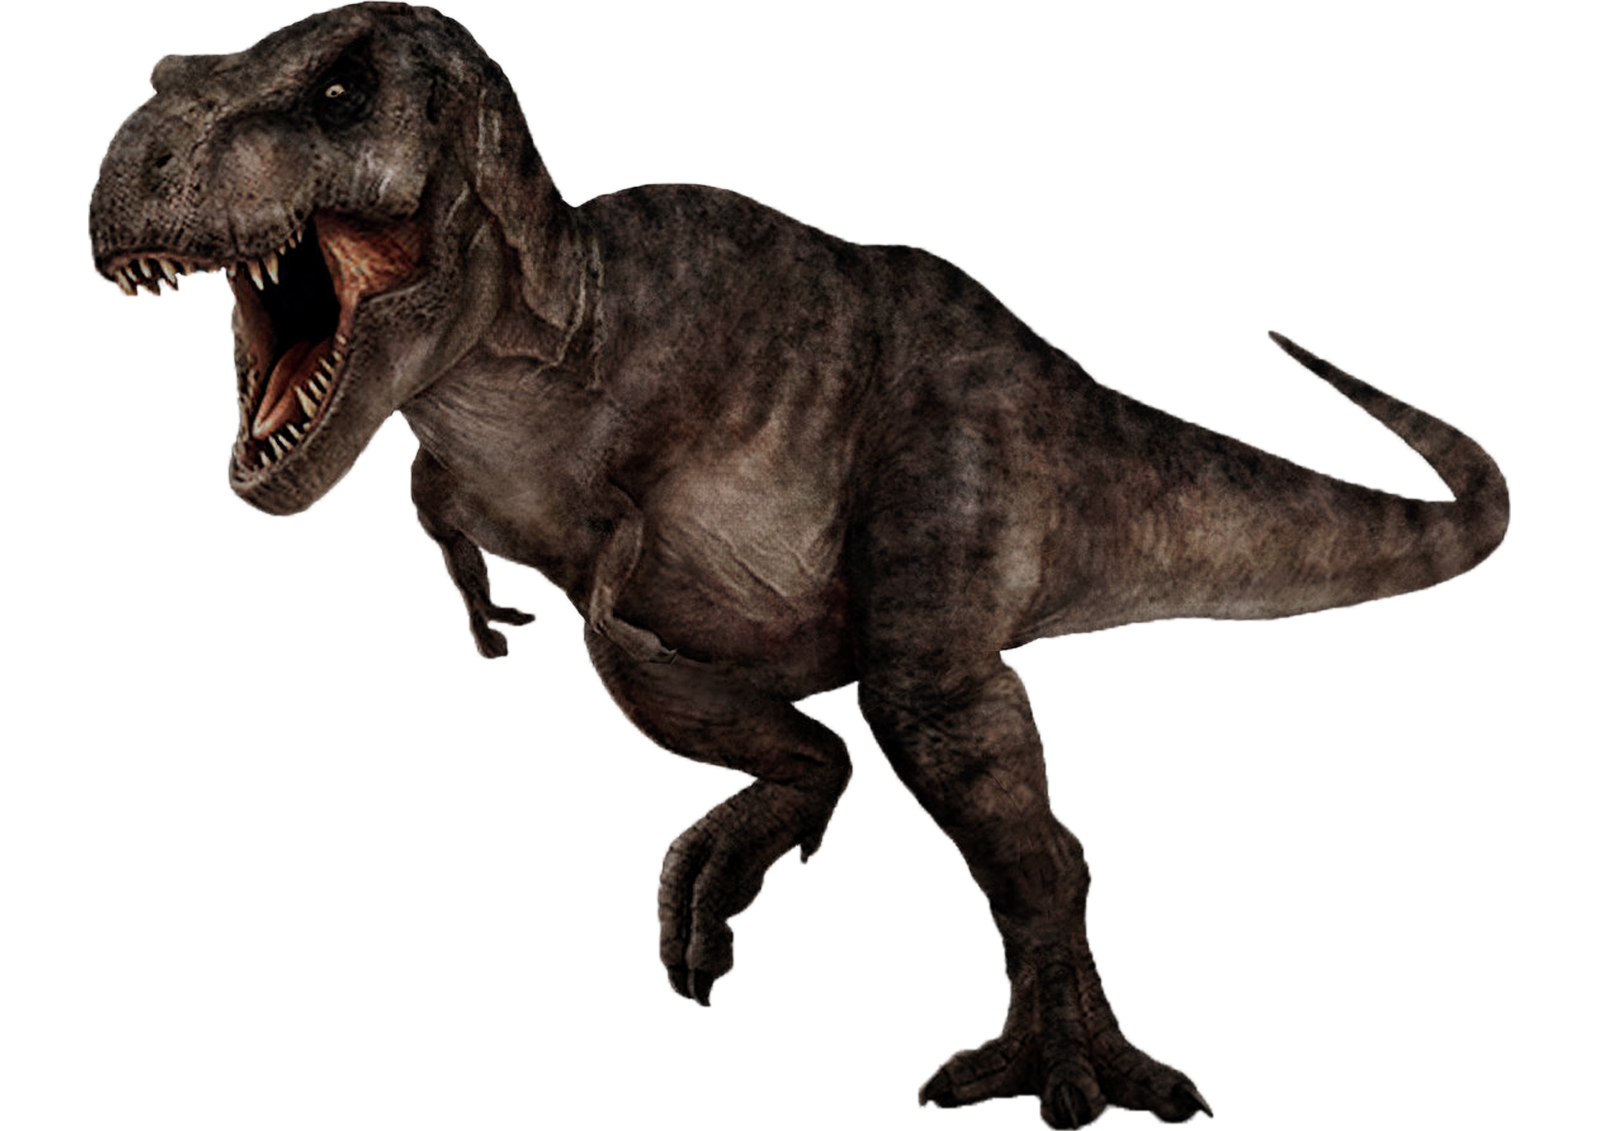 Tyrannosaurus rex 2 by darbarrrr on DeviantArt